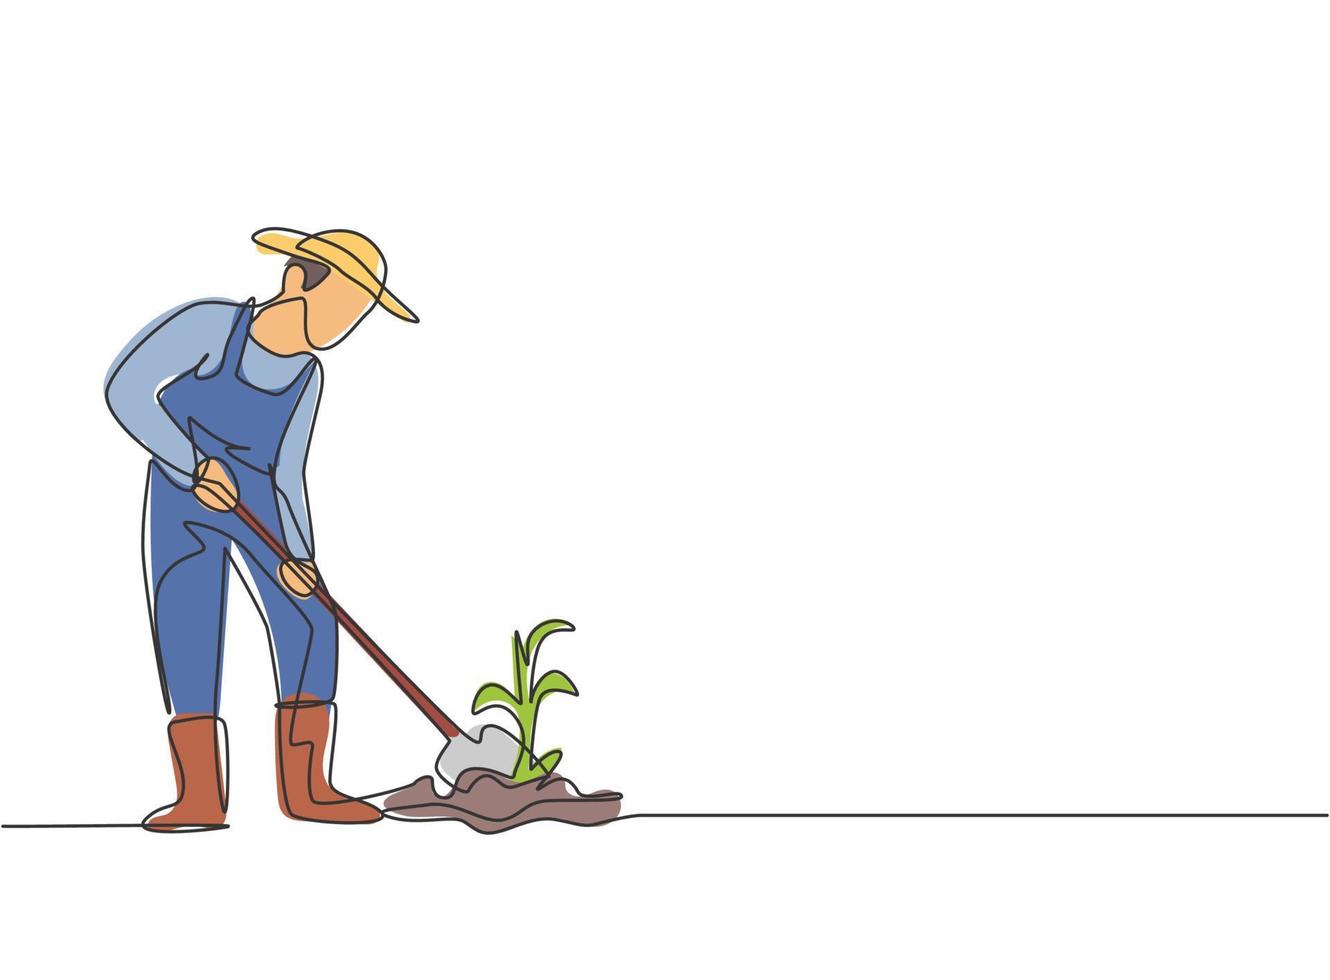 contínuo um desenho de linha jovem agricultor do sexo masculino limpou o solo com as plantas usando uma pá. agricultura bem-sucedida desafia o conceito minimalista. ilustração gráfica do vetor do desenho do desenho de linha única.